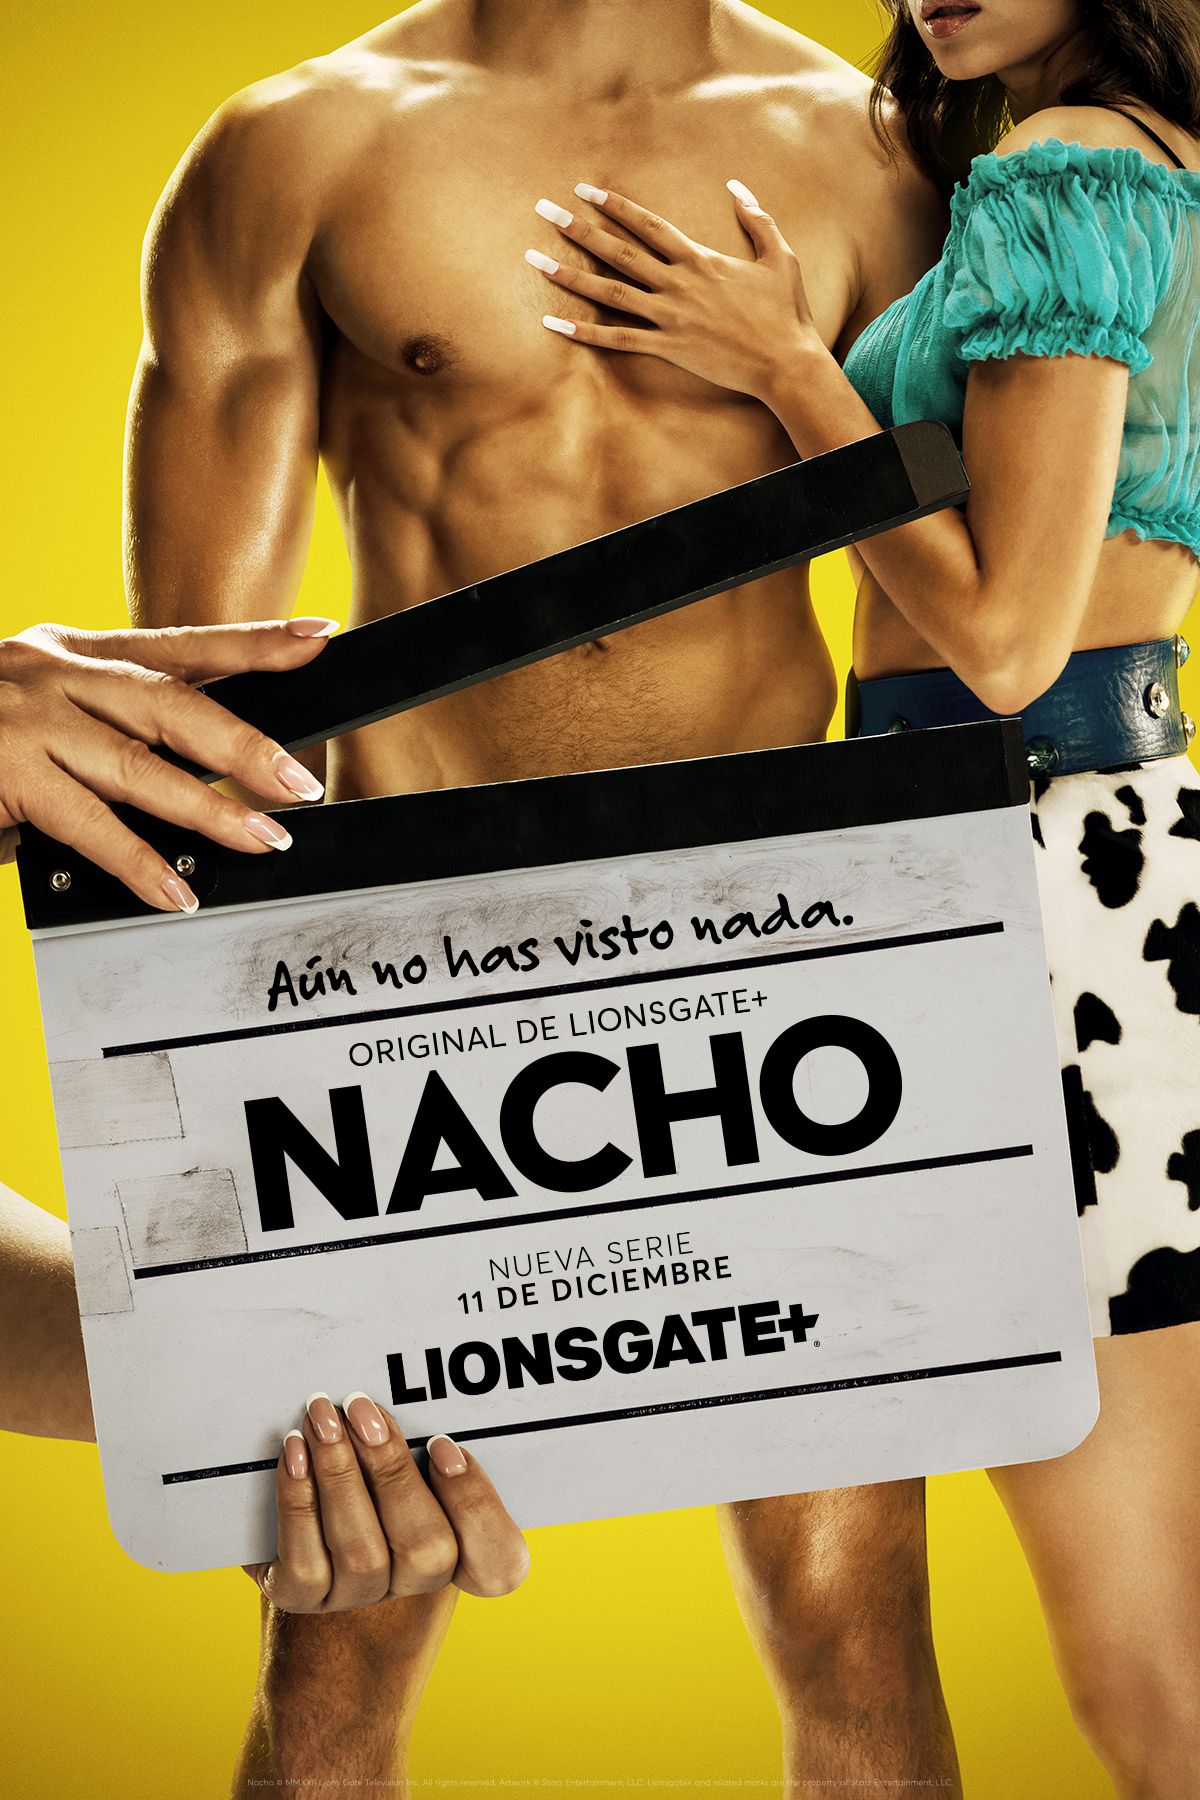 Nacho (2023) S01E04 Spanish Series HDRip HDRip download full movie